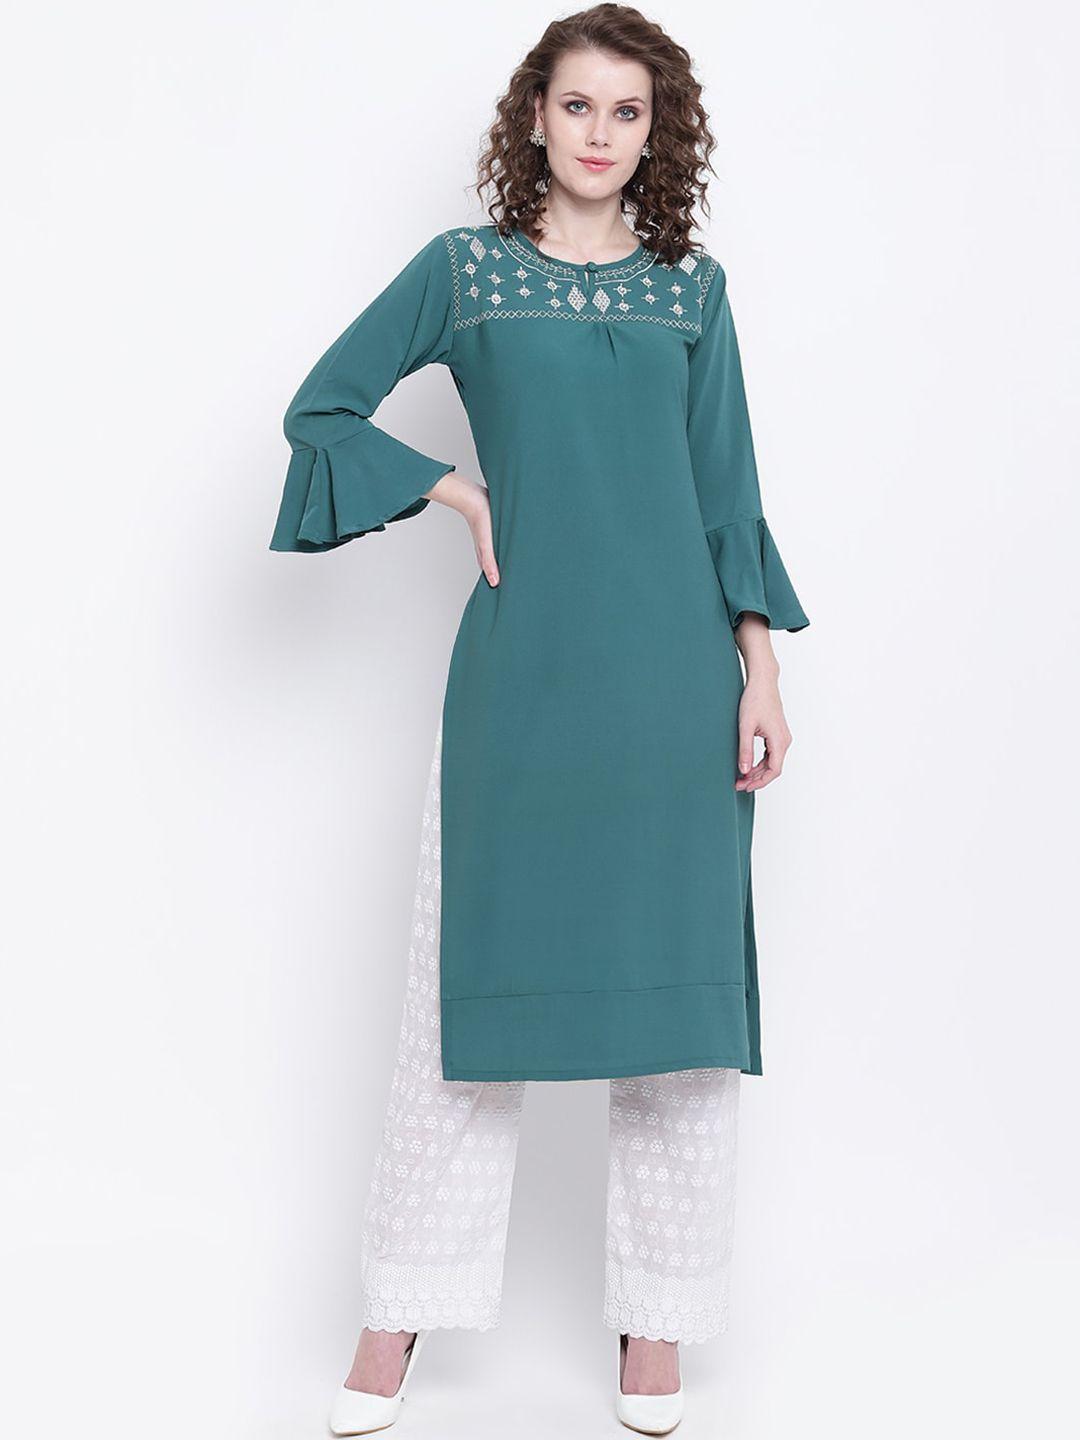 napra women green geometric yoke design embroidered flared sleeves georgette kurta